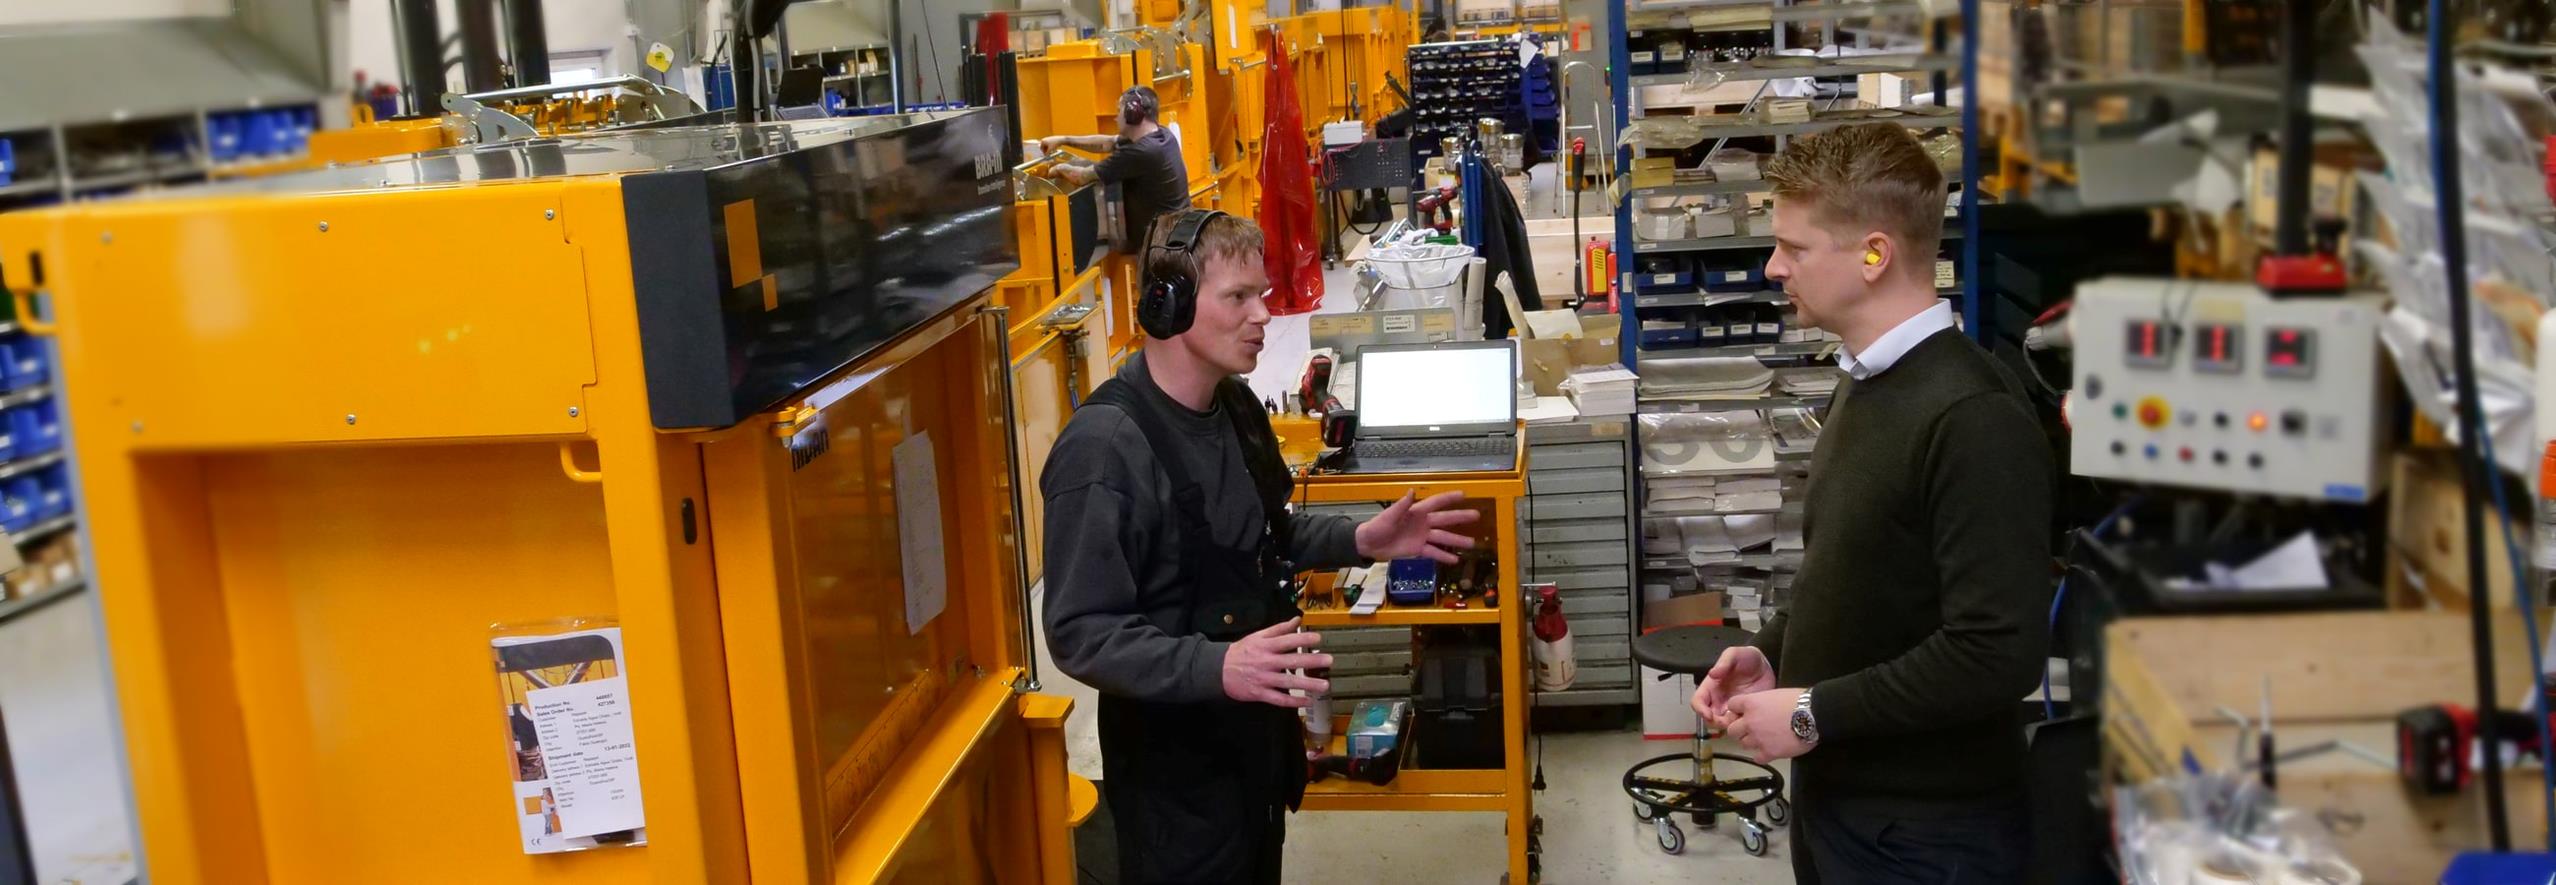 Henrik Helsinghof CEO Bramidan og Bjarke montagemedarbejder taler sammen ved montagelinje